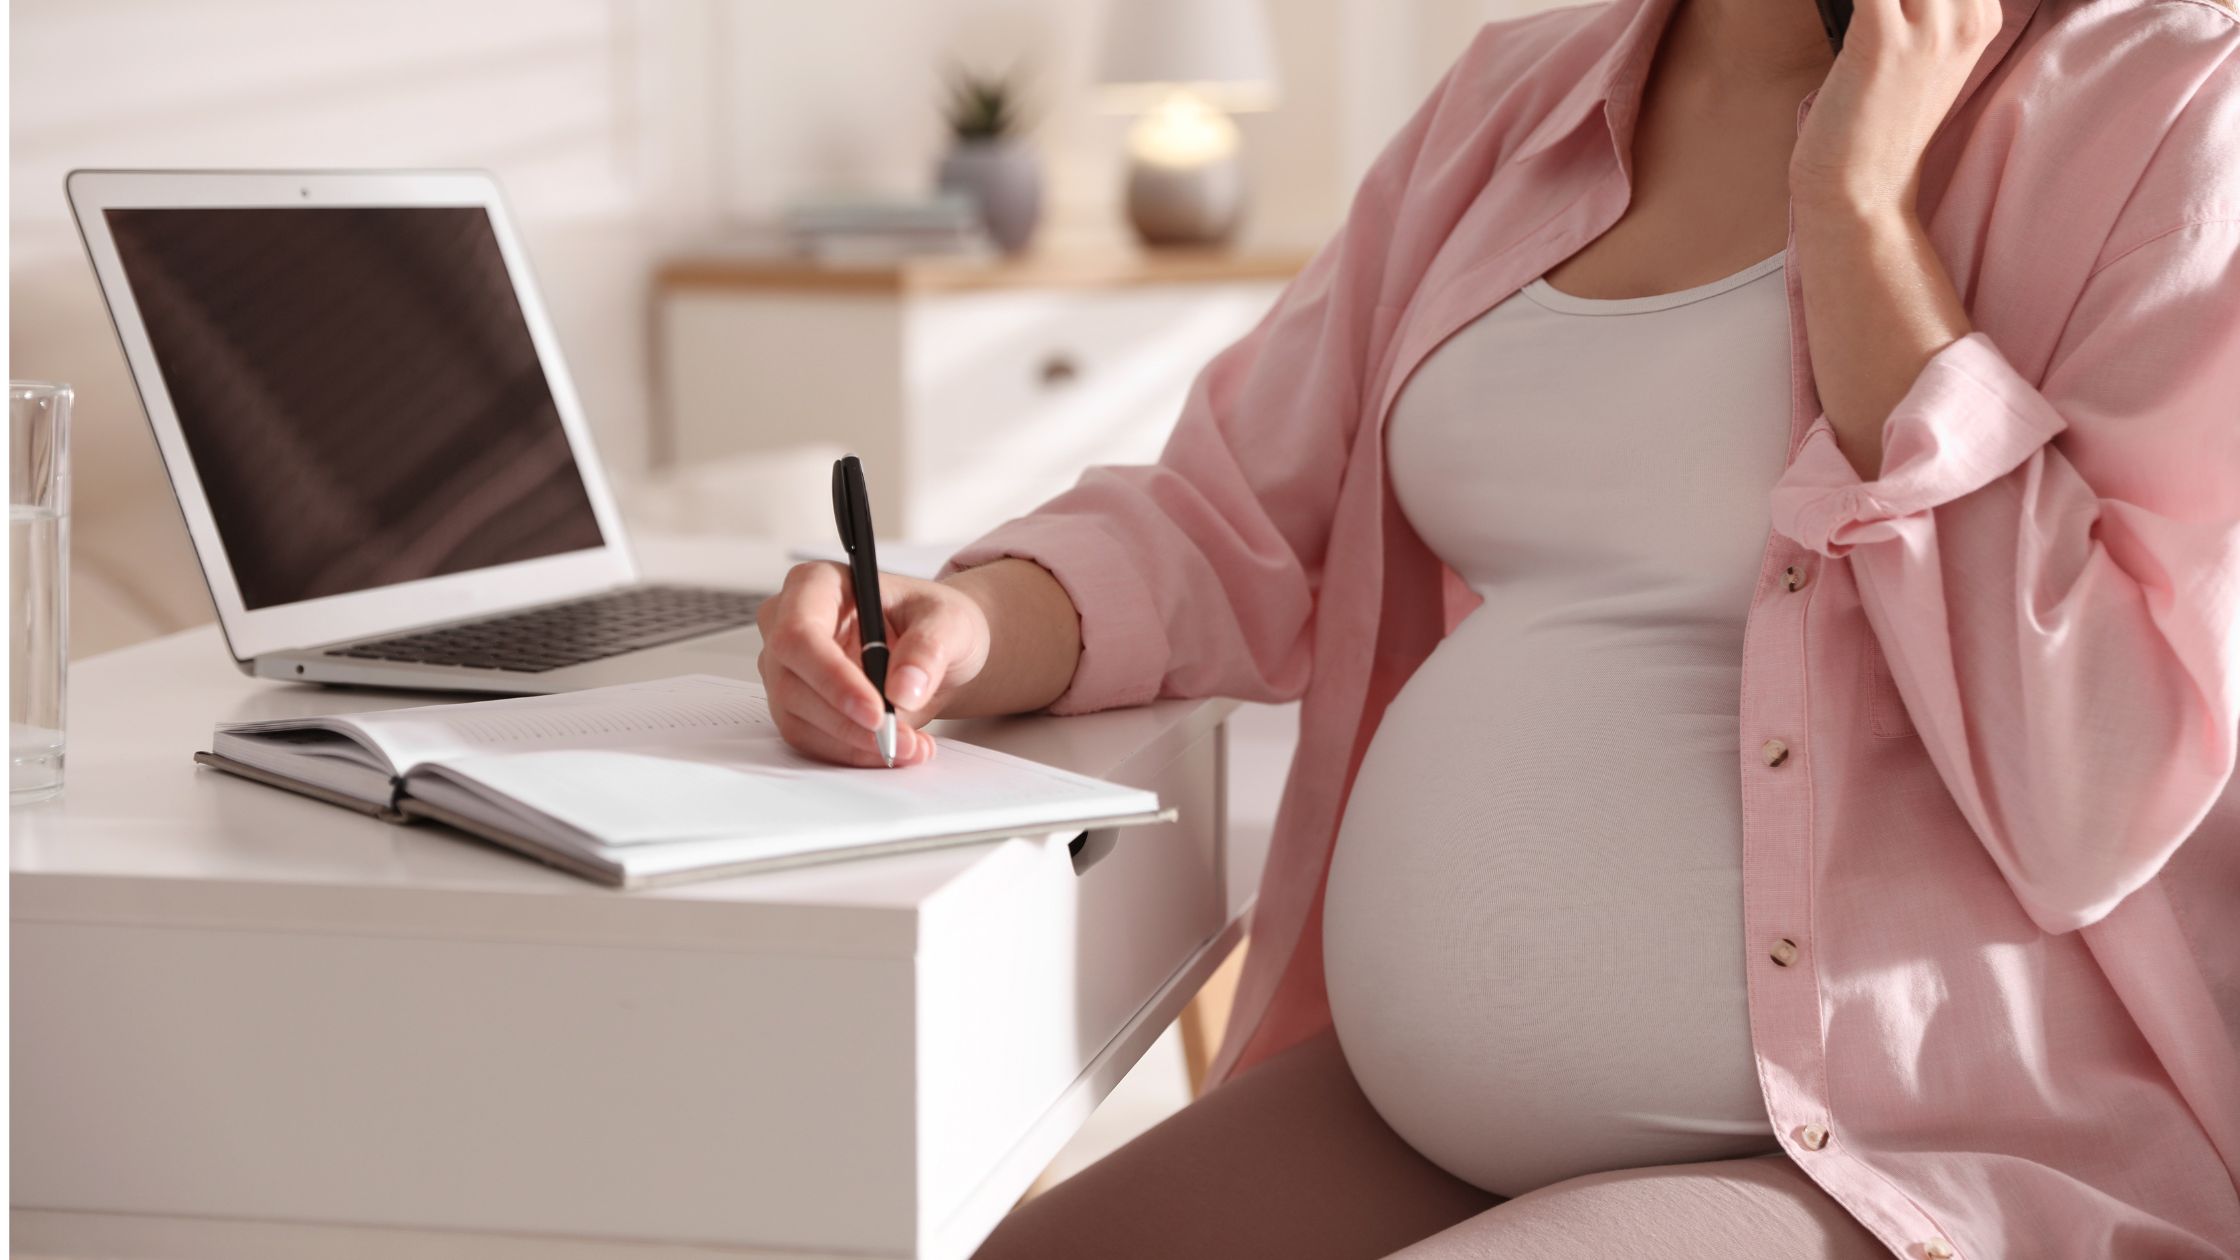 Nulidad del despido de trabajadora embarazada sin derecho a indemnización adicional